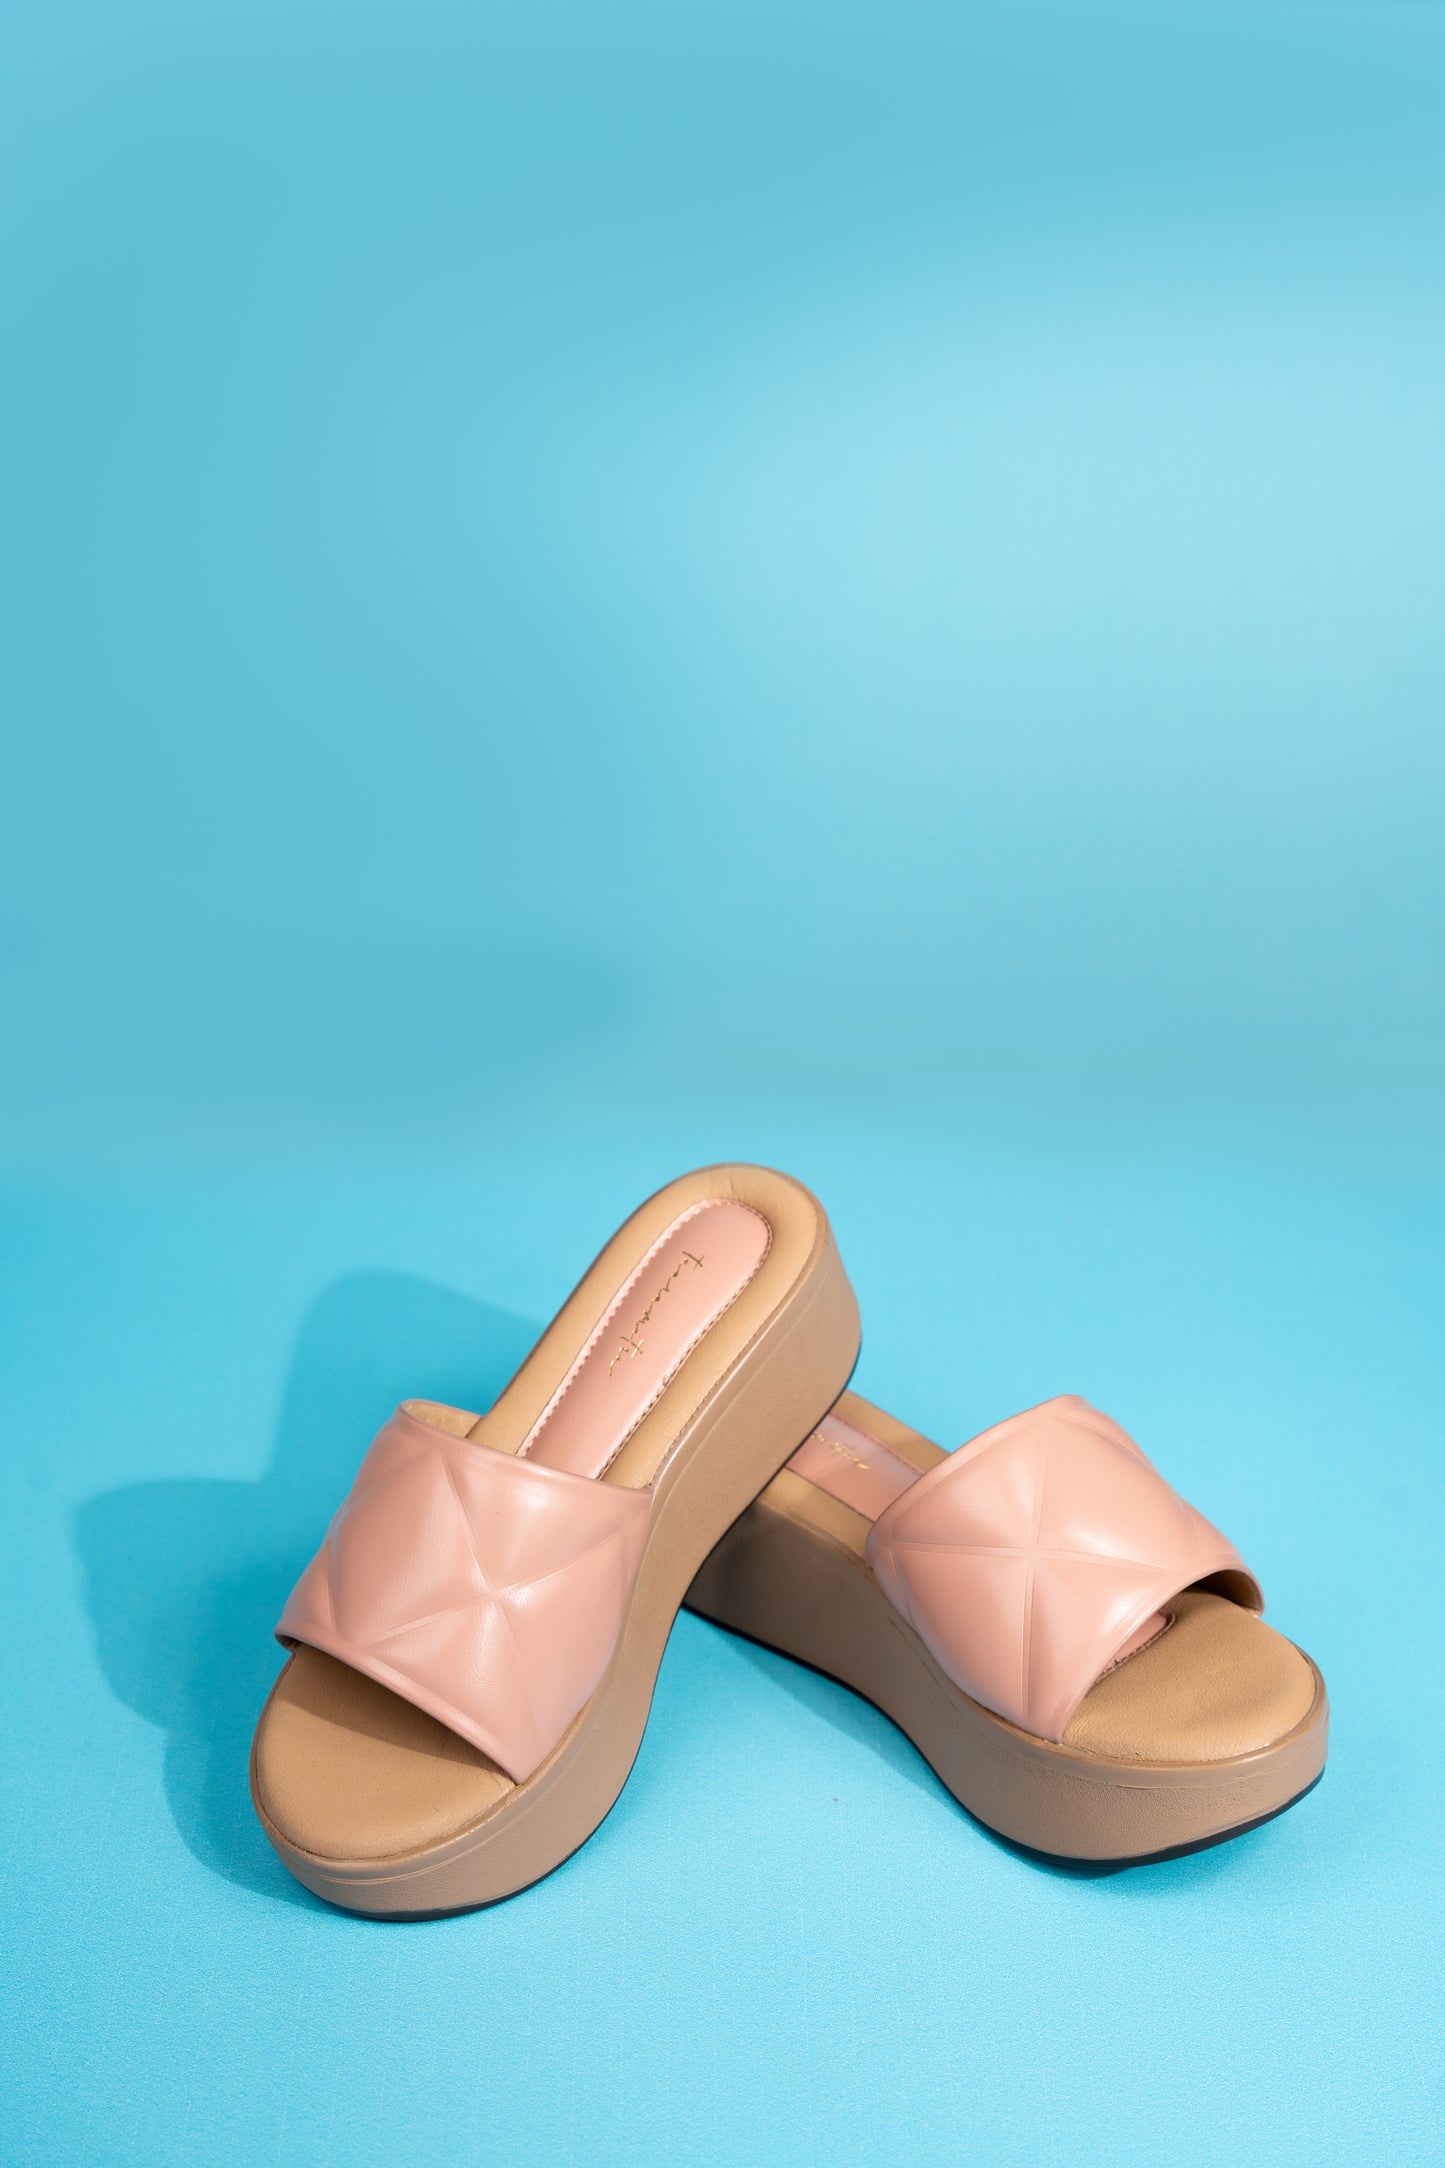 Mista flatform in Peach heel sandals